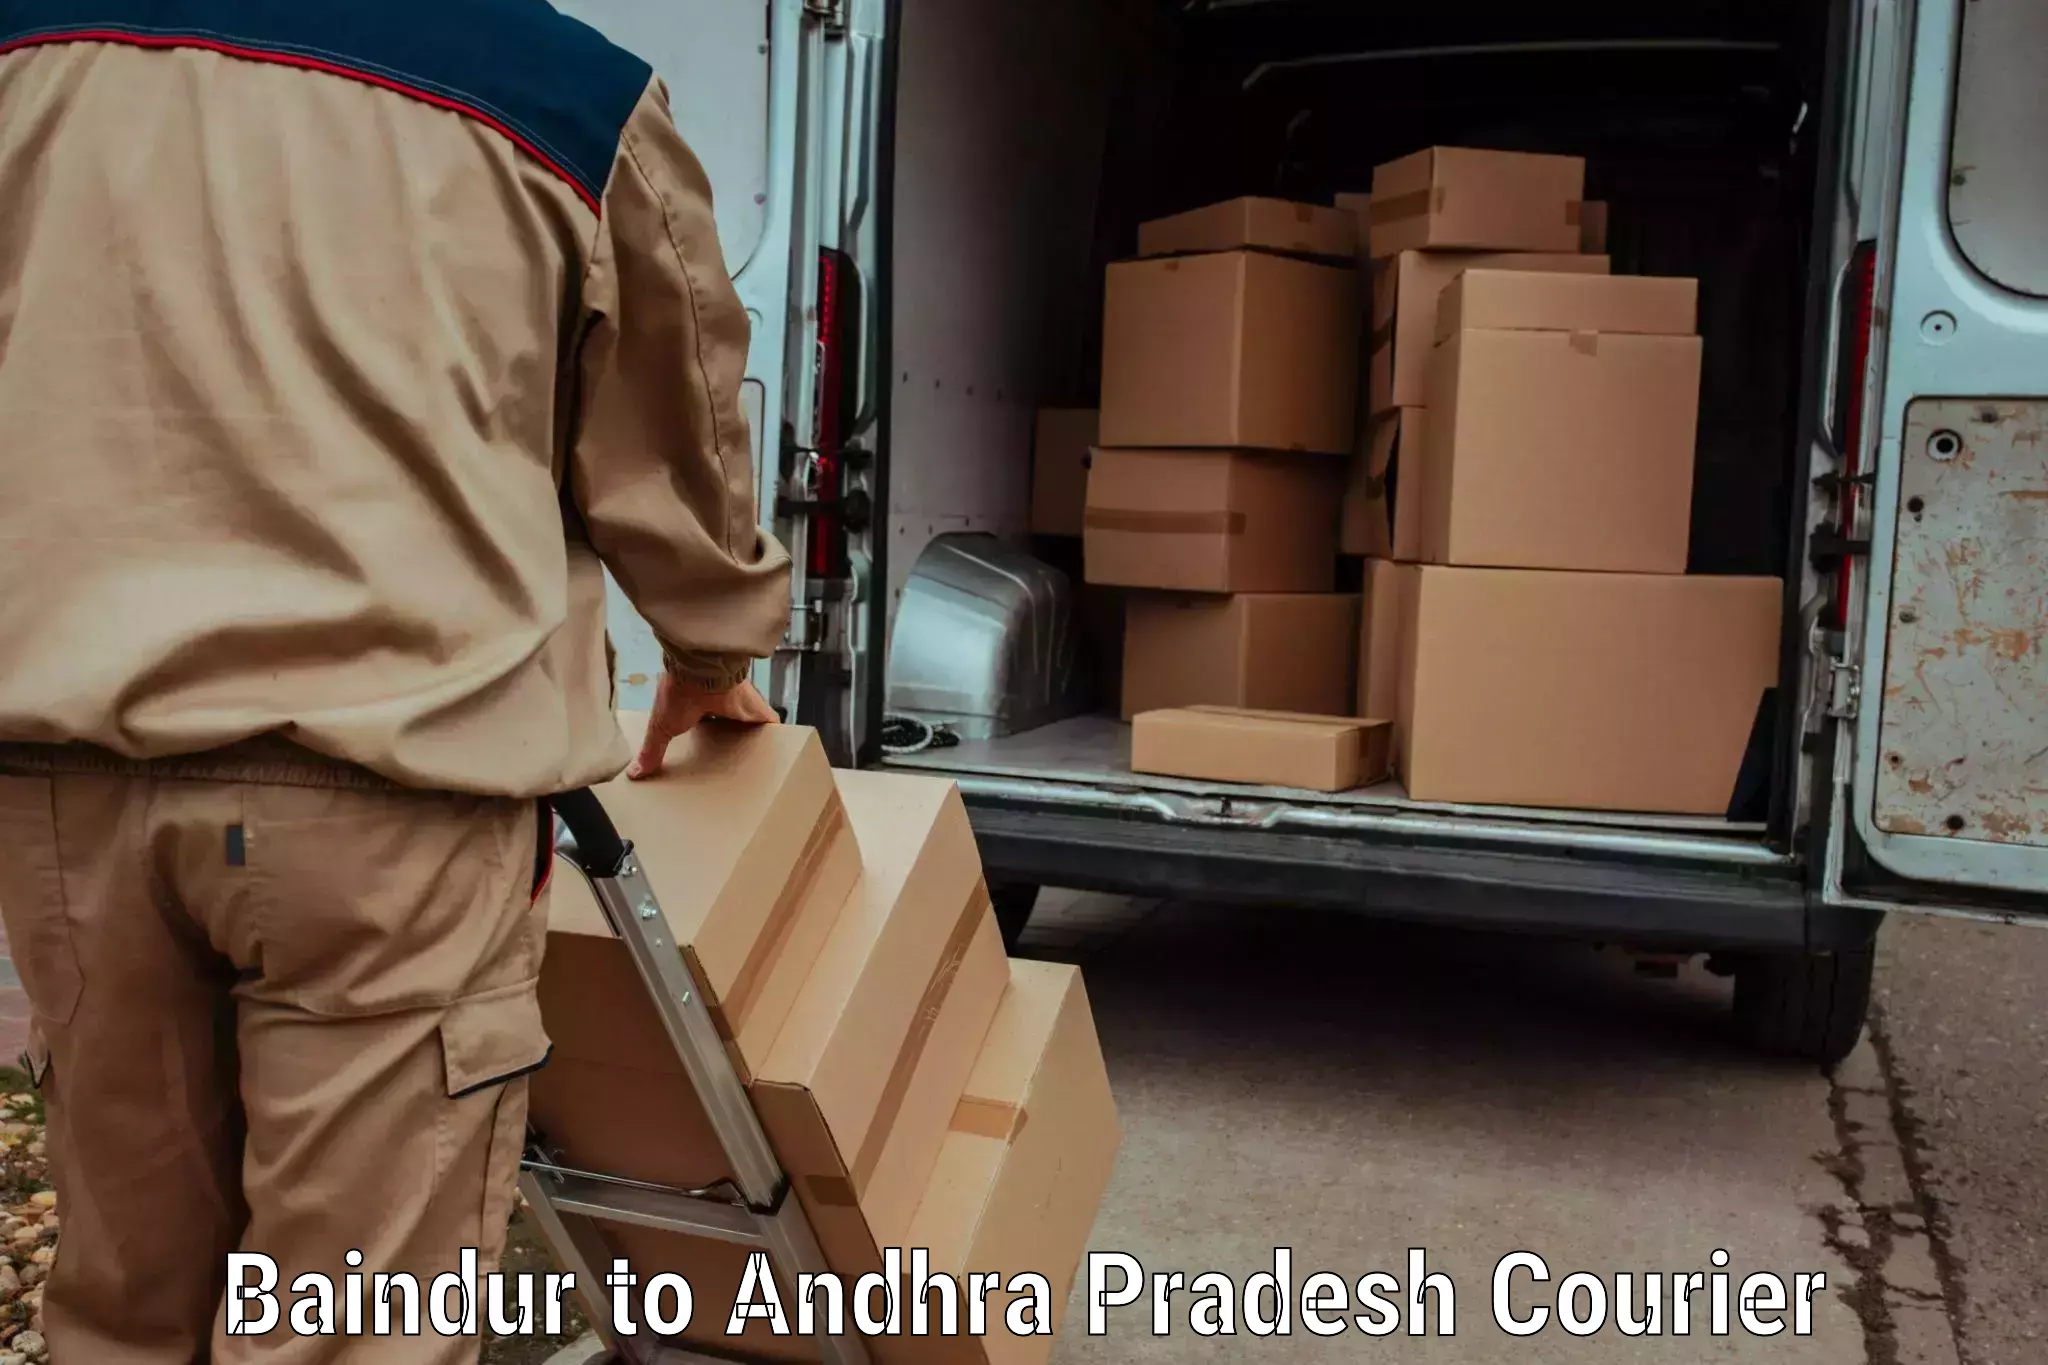 Luggage transport company Baindur to Andhra Pradesh